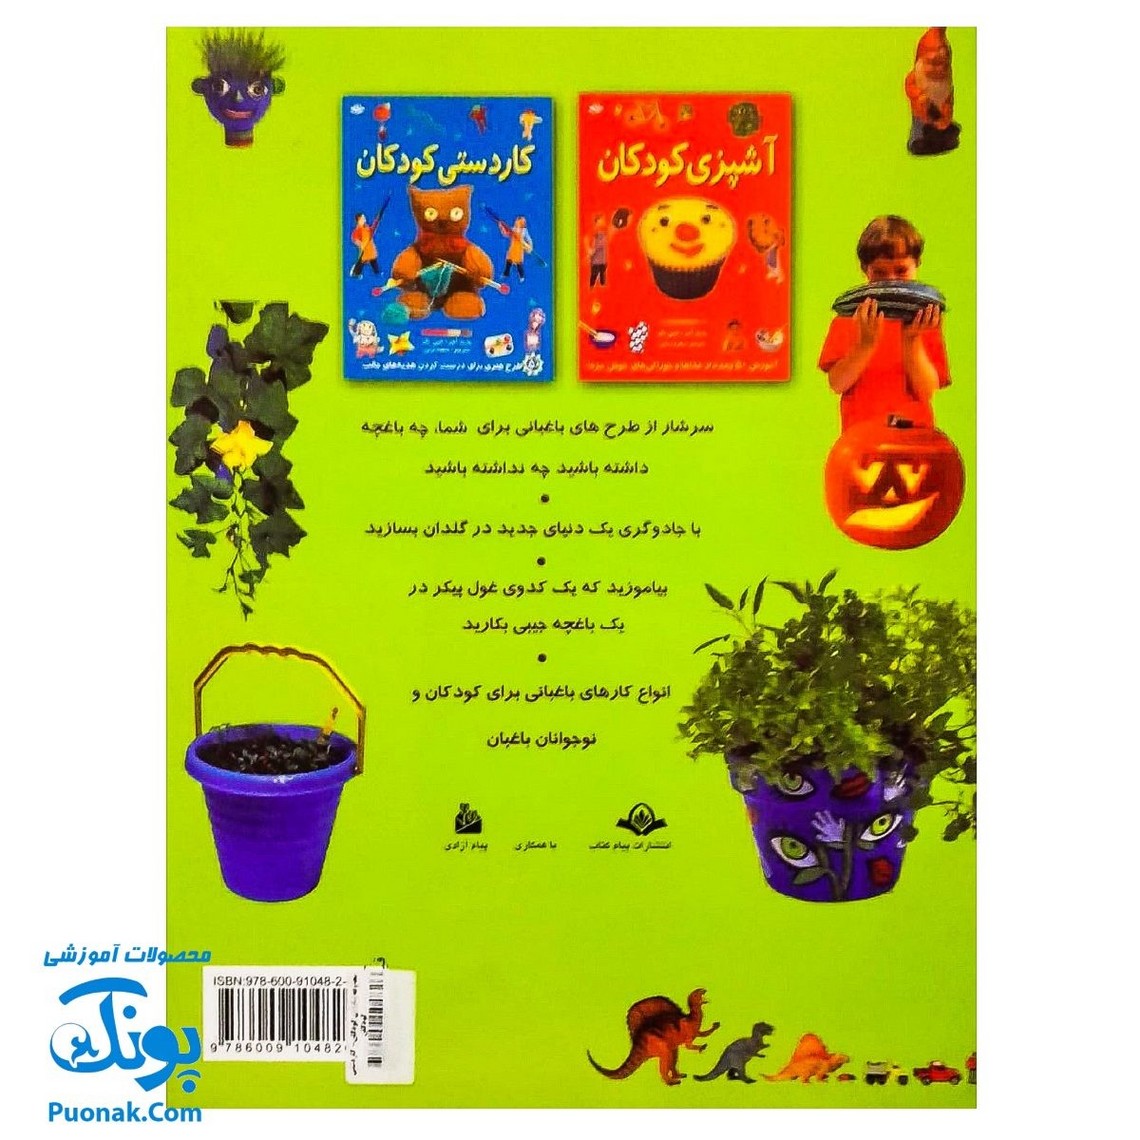 مجموعه باغبانی کودکان جلد سخت (۵۰ دستورالعمل برای کاشت و رشد گل ها و گیاهان)